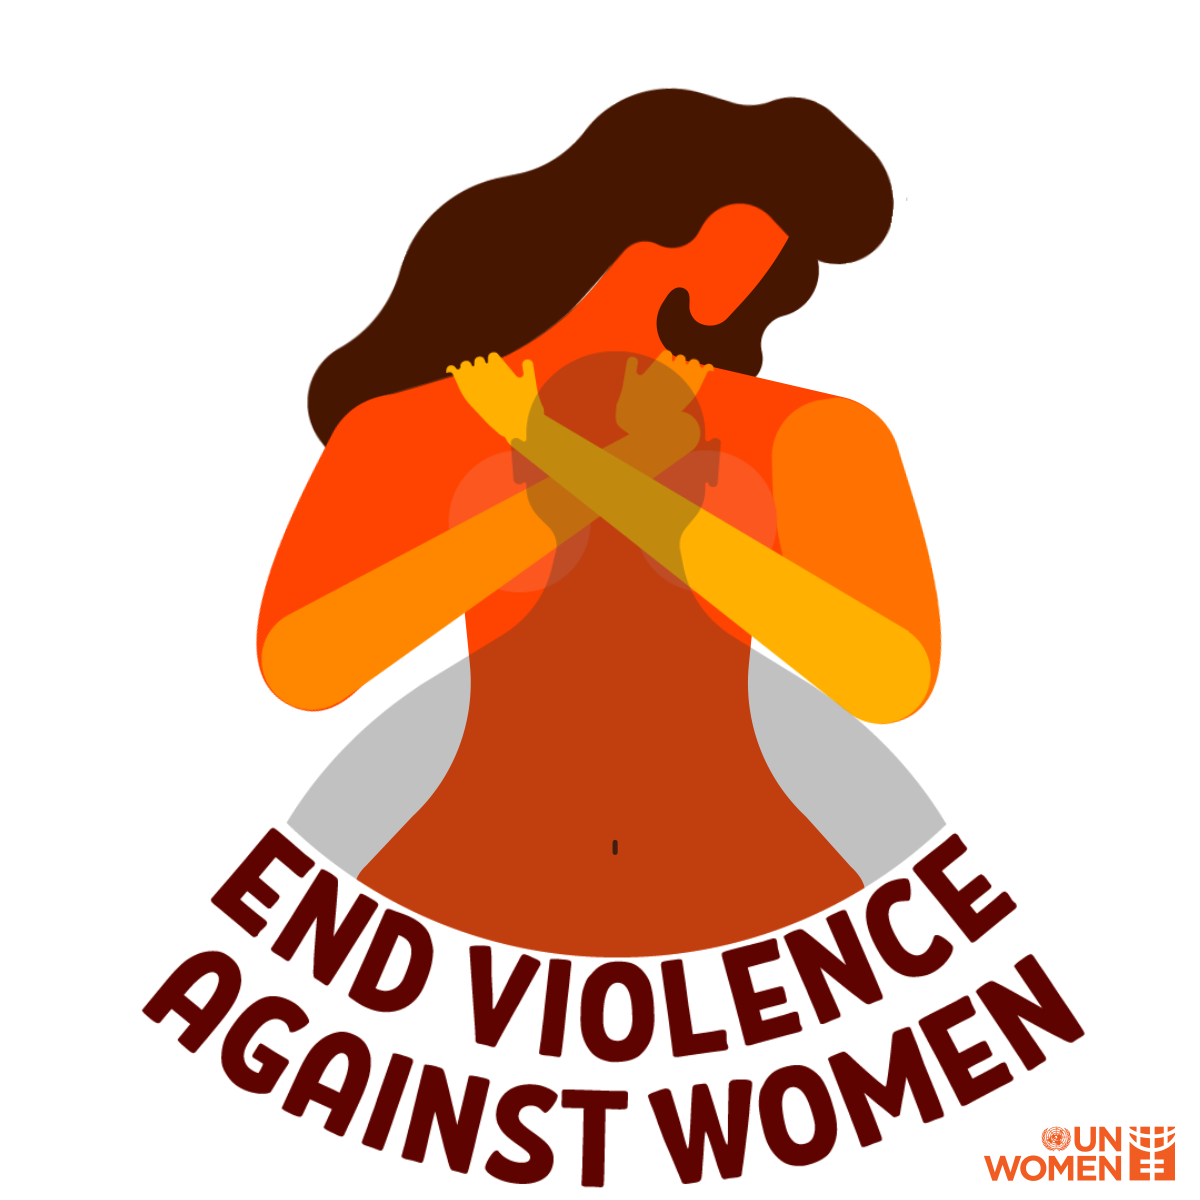 Giornata internazionale per l'eliminazione della violenza contro le donne 